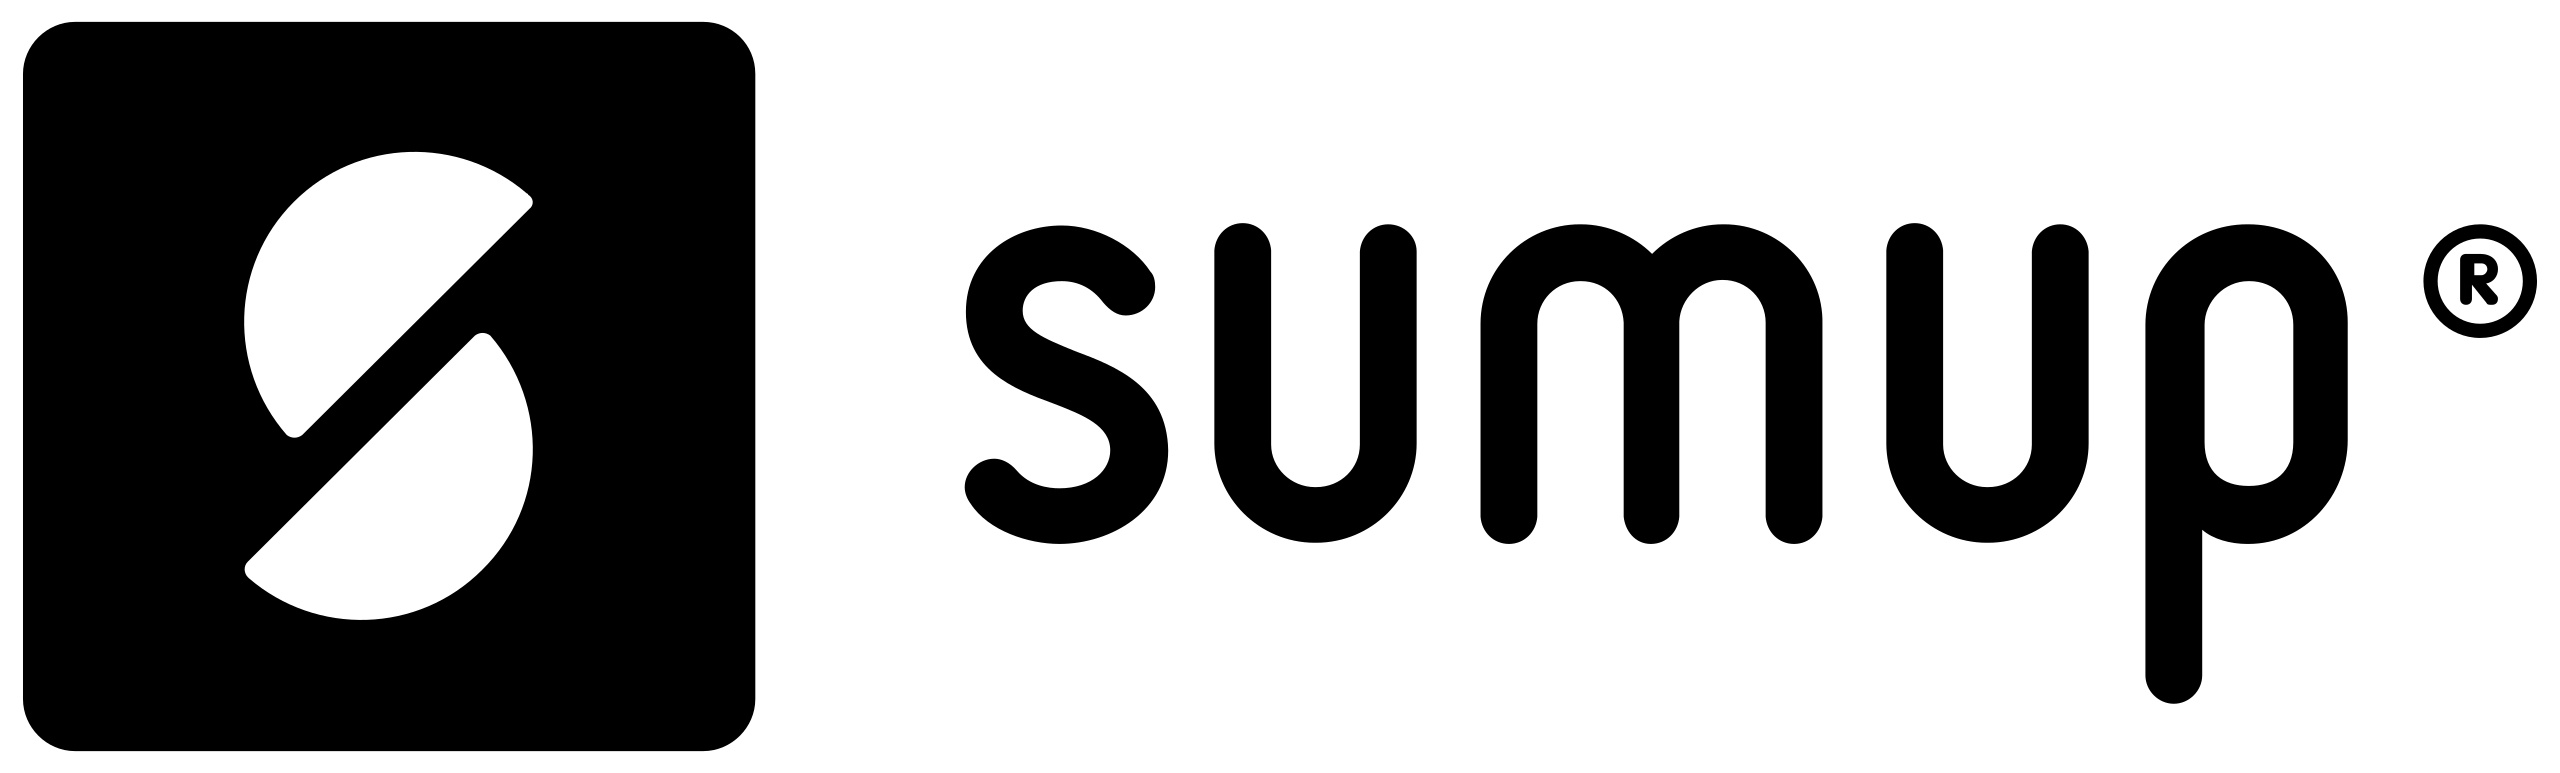 sumup logo